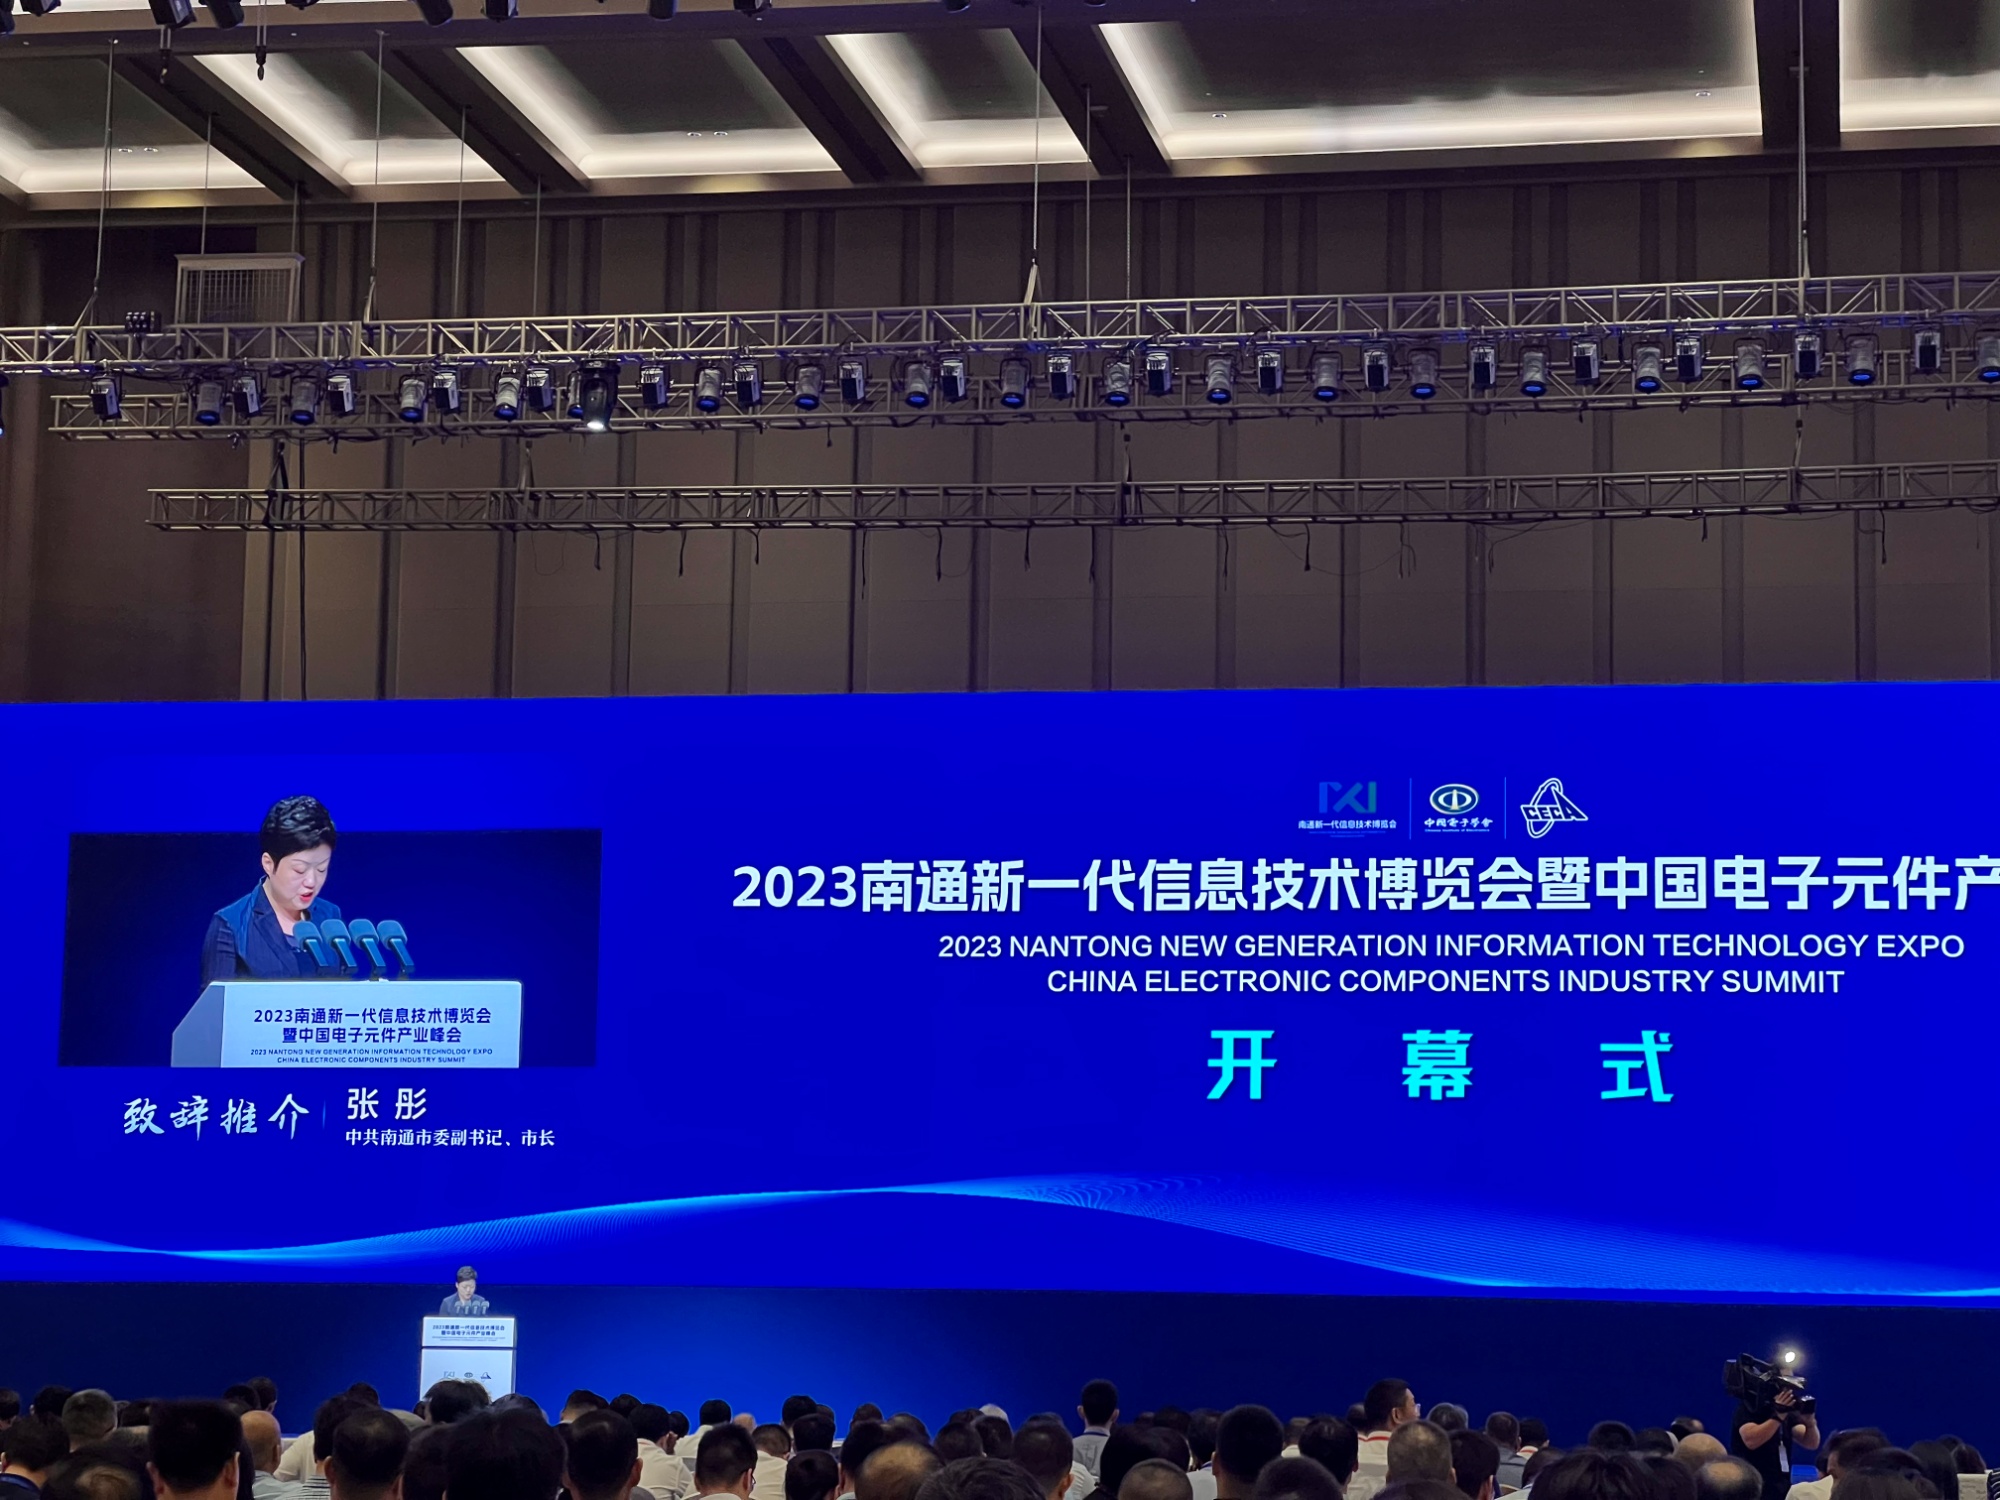 BOB真人2023南通新一代信息技术博览会暨中国电子元件产业峰会开幕